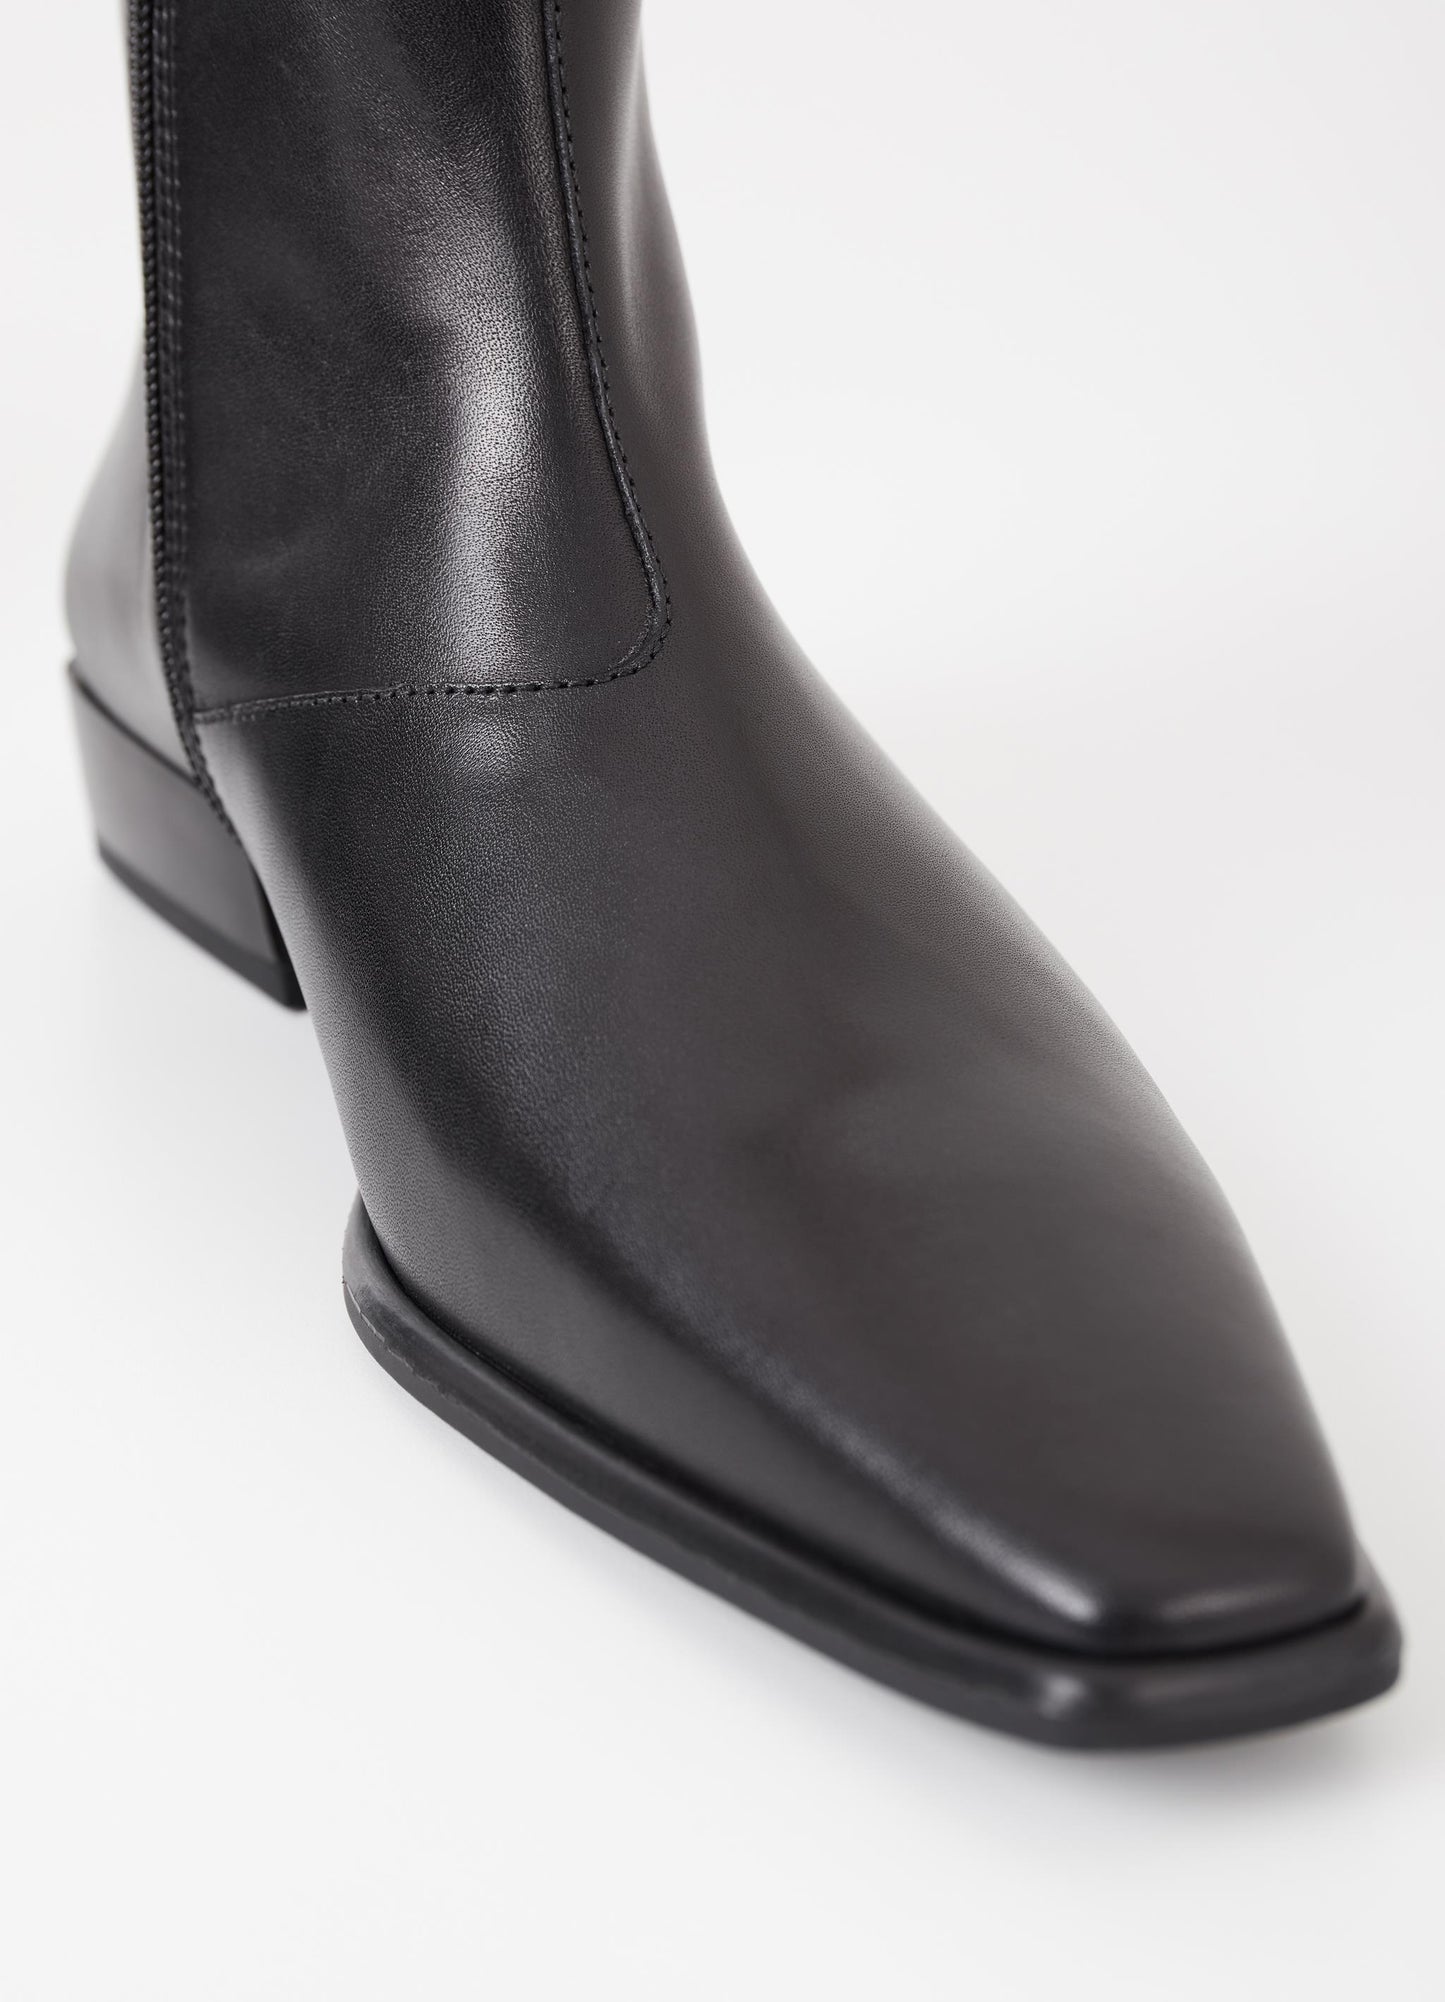 Nella Black Leather Boots